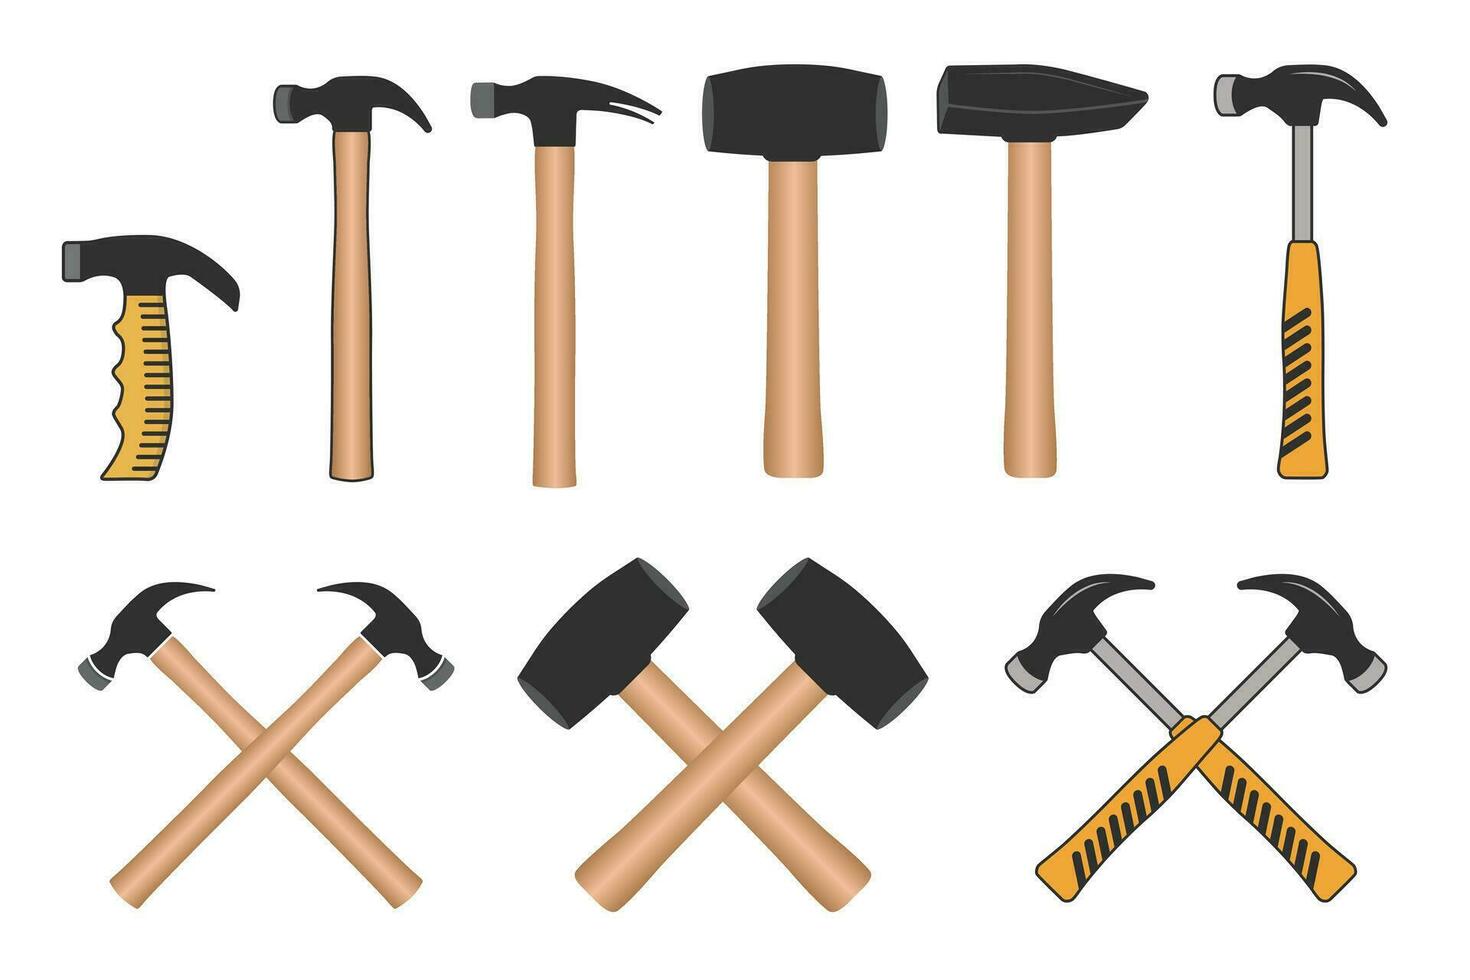 Hammer Clip Art Vektor bündeln, Hammer Vektor, Hammer Illustration bündeln, Zimmermann Vektor bündeln, Mechaniker Werkzeuge Clip Art bündeln, Mechaniker Werkzeuge